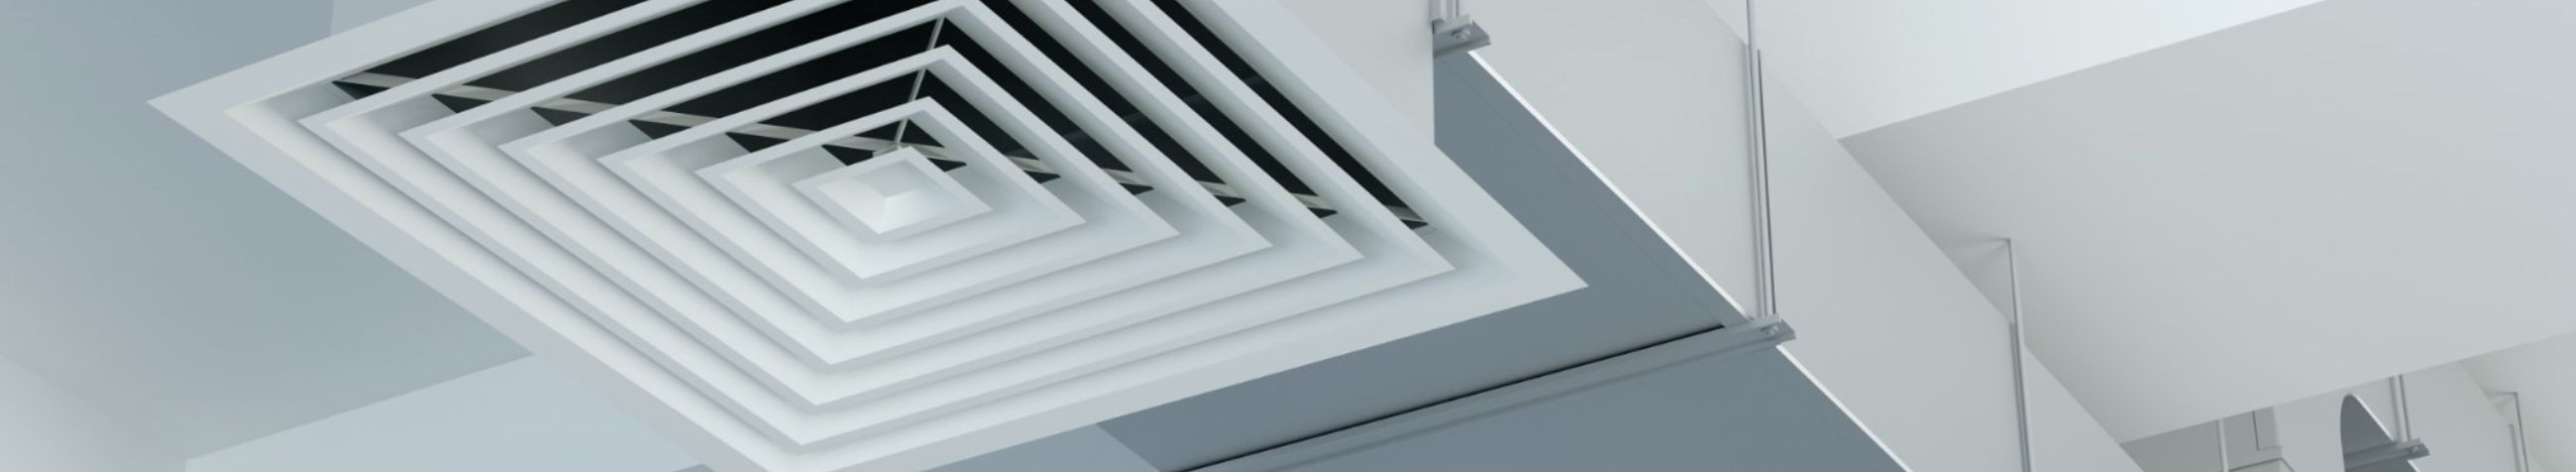 Keskendume ventilatsioonisüsteemidele, pakkudes mitmekülgseid teenuseid, mis hõlmavad nende ehitust, hooldust, puhastust ja kaamerauuringuid.